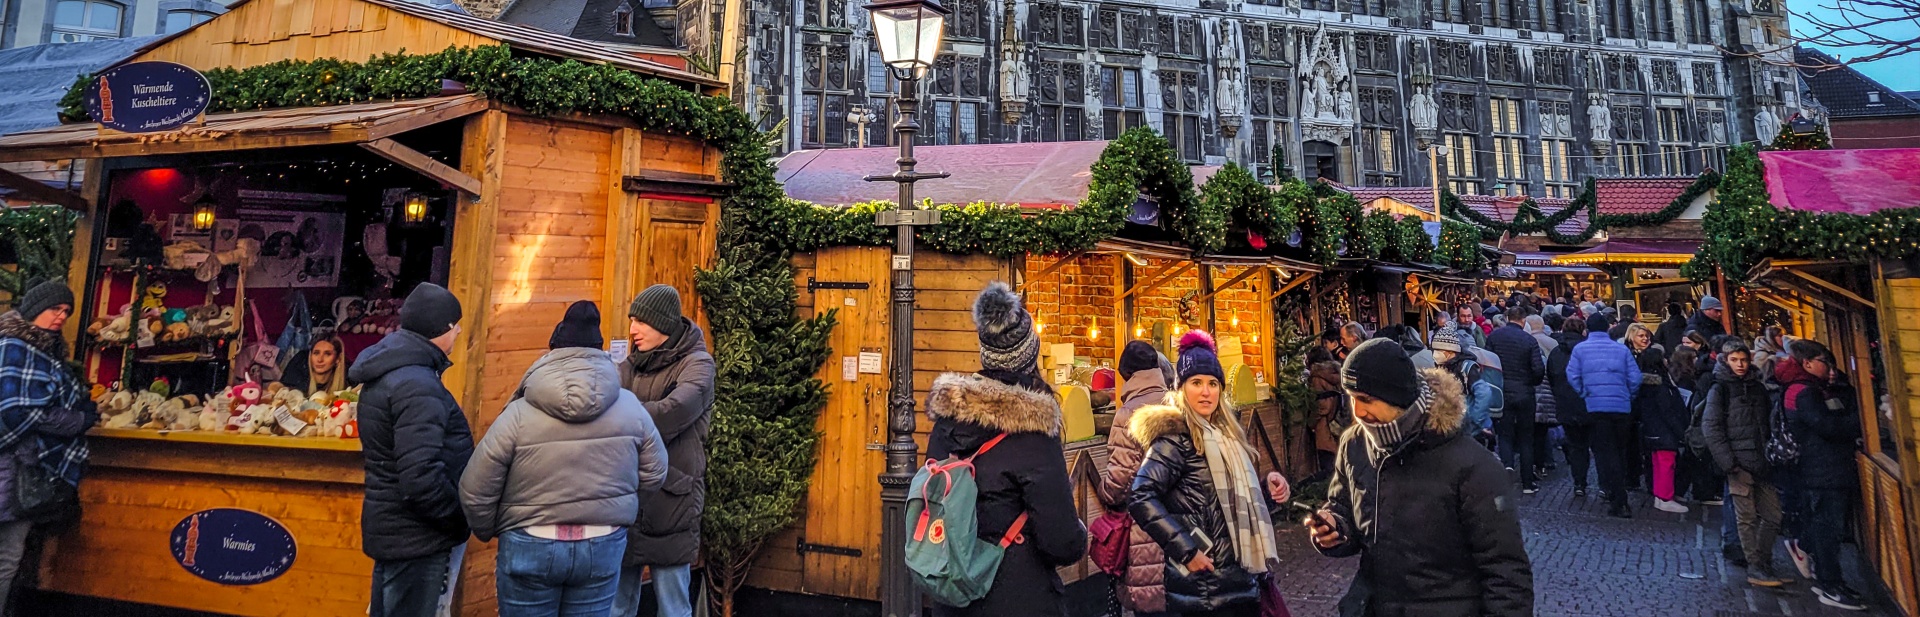 Gezellige drukte op de kerstmarkt van Aken, rondom de beroemde Dom en het stadhuis.